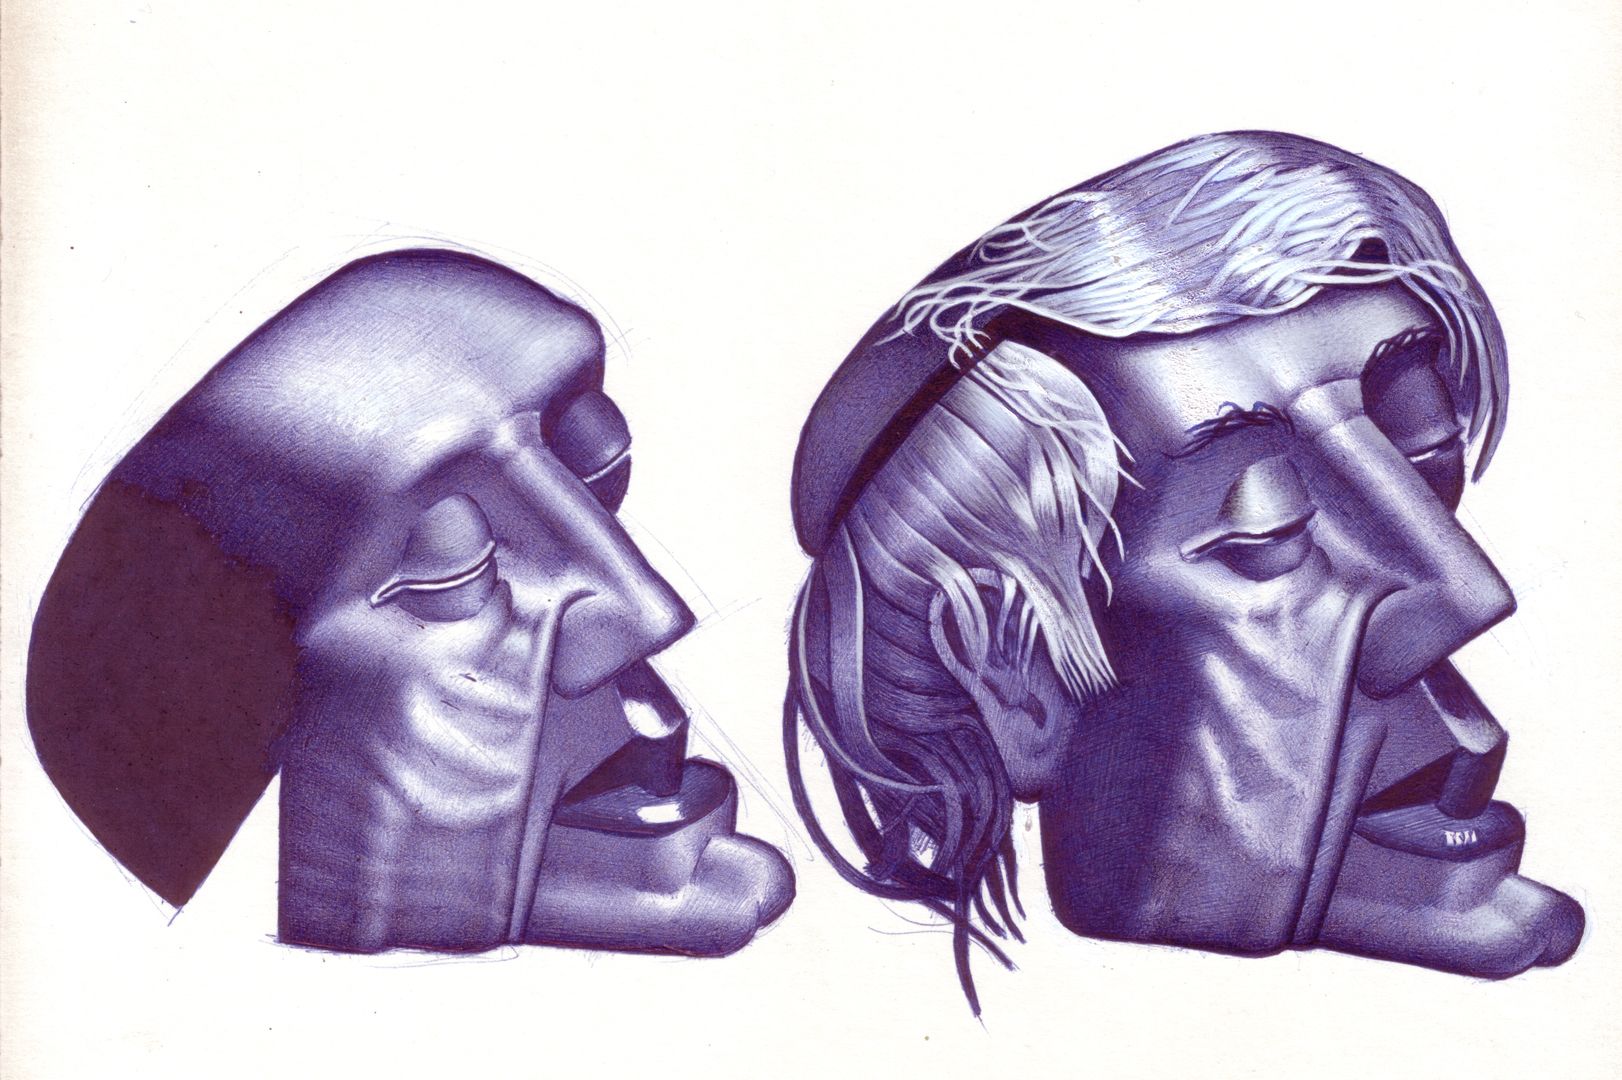 Kopfstudien Anatomie-Kopf 5, Detailansicht